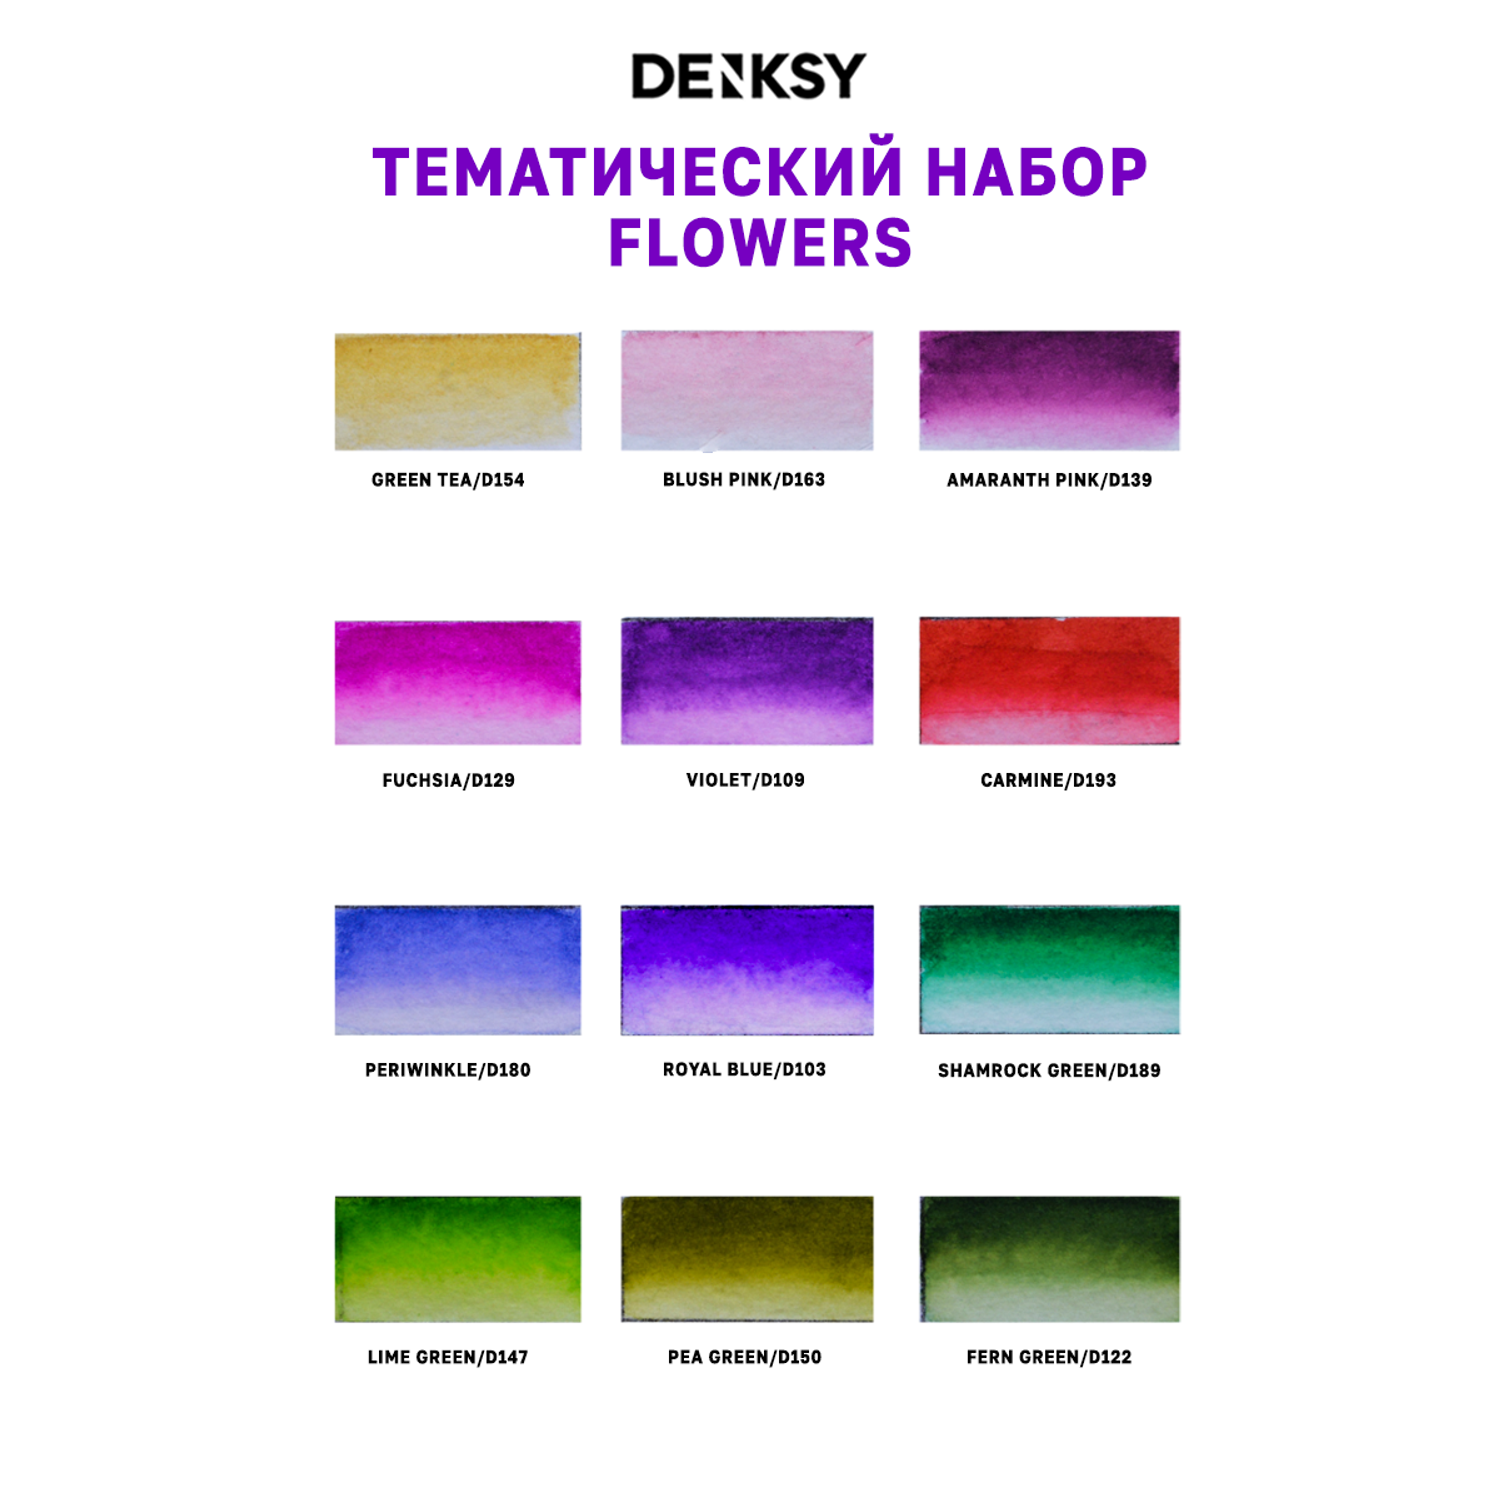 Акварельные маркеры DENKSY 12 Flowers цветов в белом корпусе и 1 кисть с резервуаром - фото 3